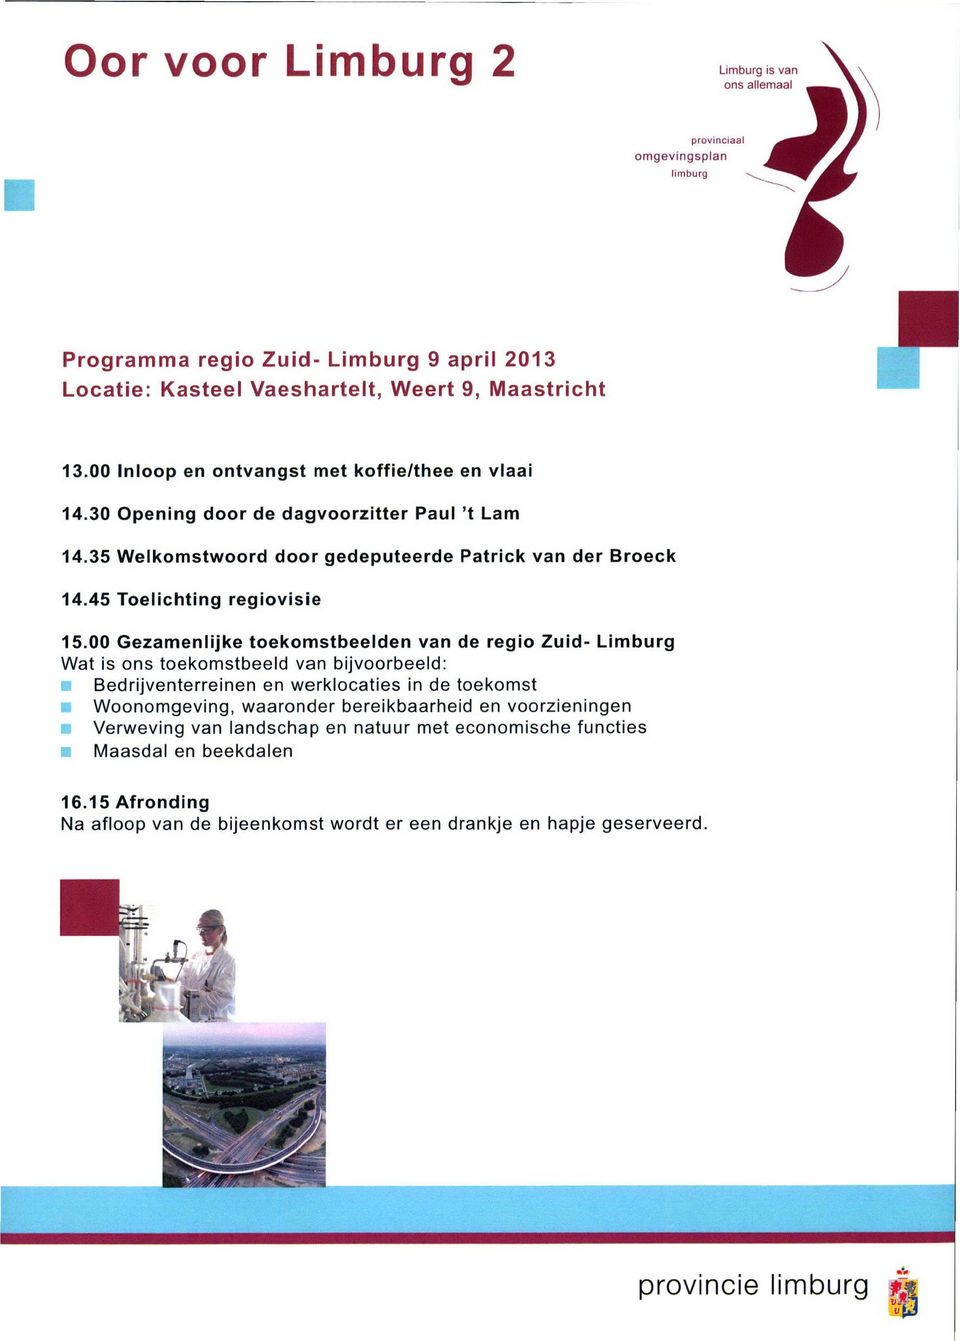 00 Gezamenlijke toekomstbeelden van de regio Zuid- Limburg Wat is ons toekomstbeeld van bijvoorbeeld: Bedrijventerreinen en werklocaties in de toekomst Woonomgeving, waaronder bereikbaarheid